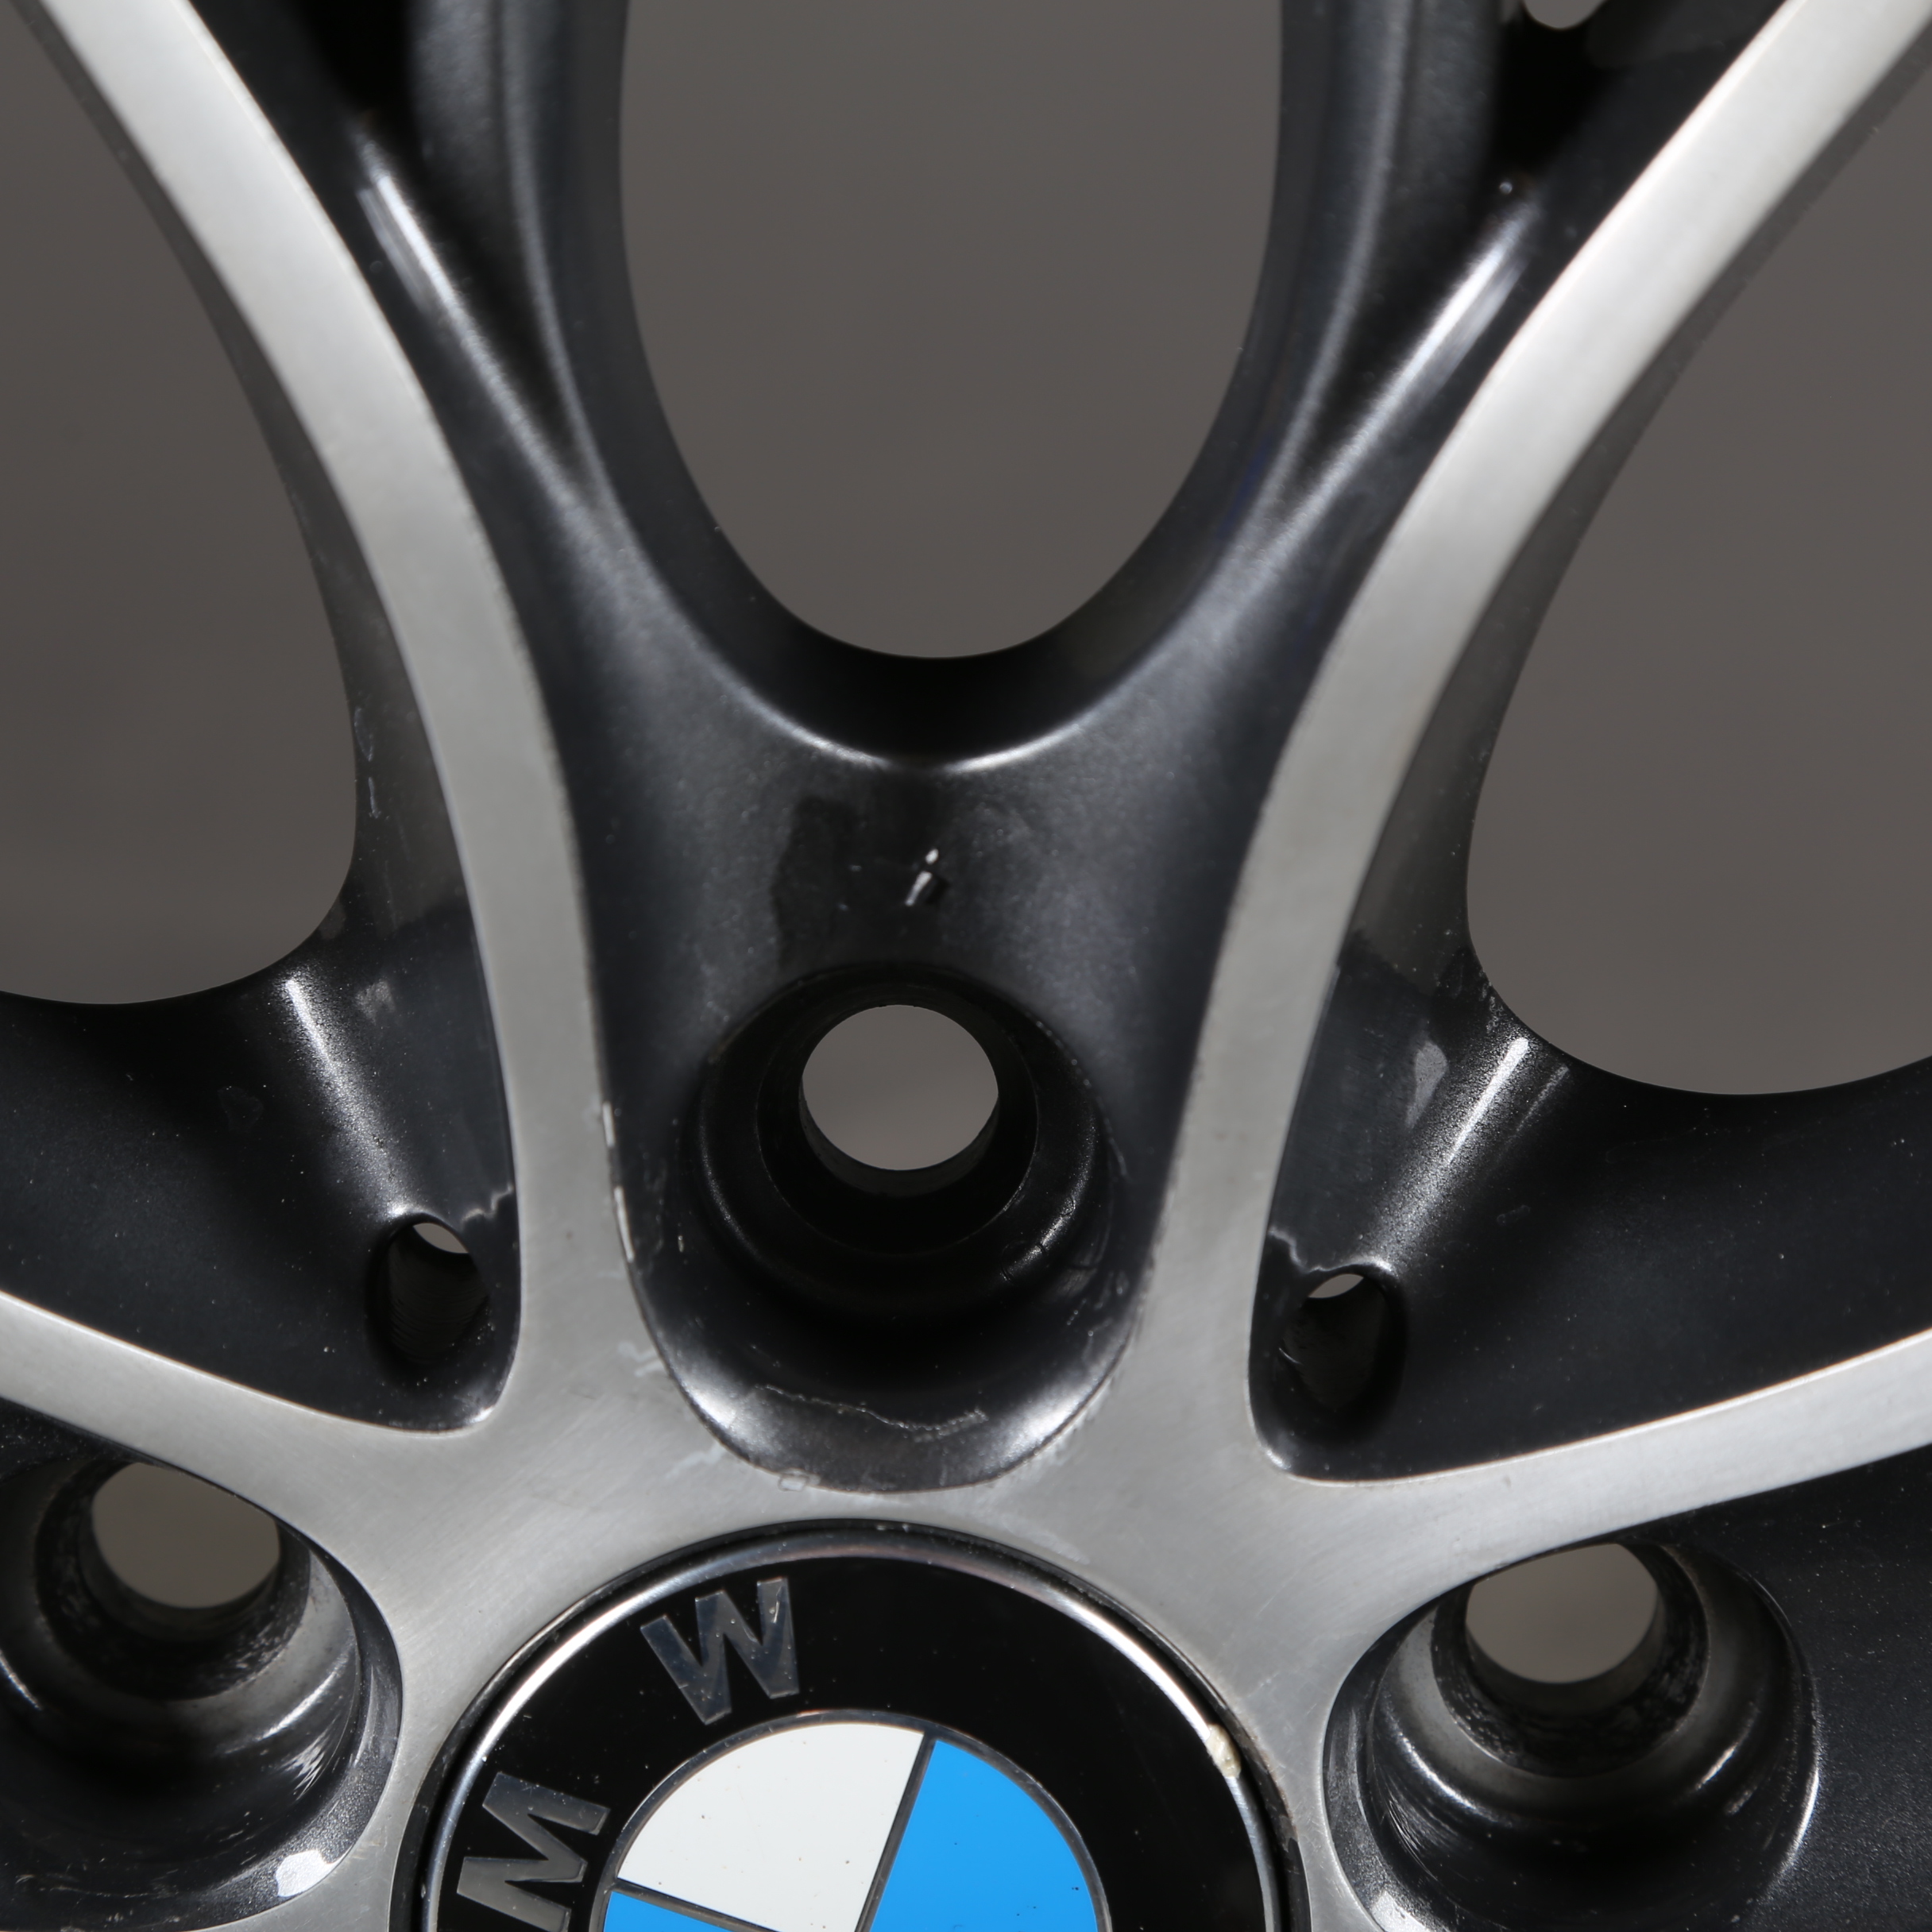 19-inch summer wheels Original BMW 1 Series F20 F21 2 Series F22 F23 M405 6796220 405M